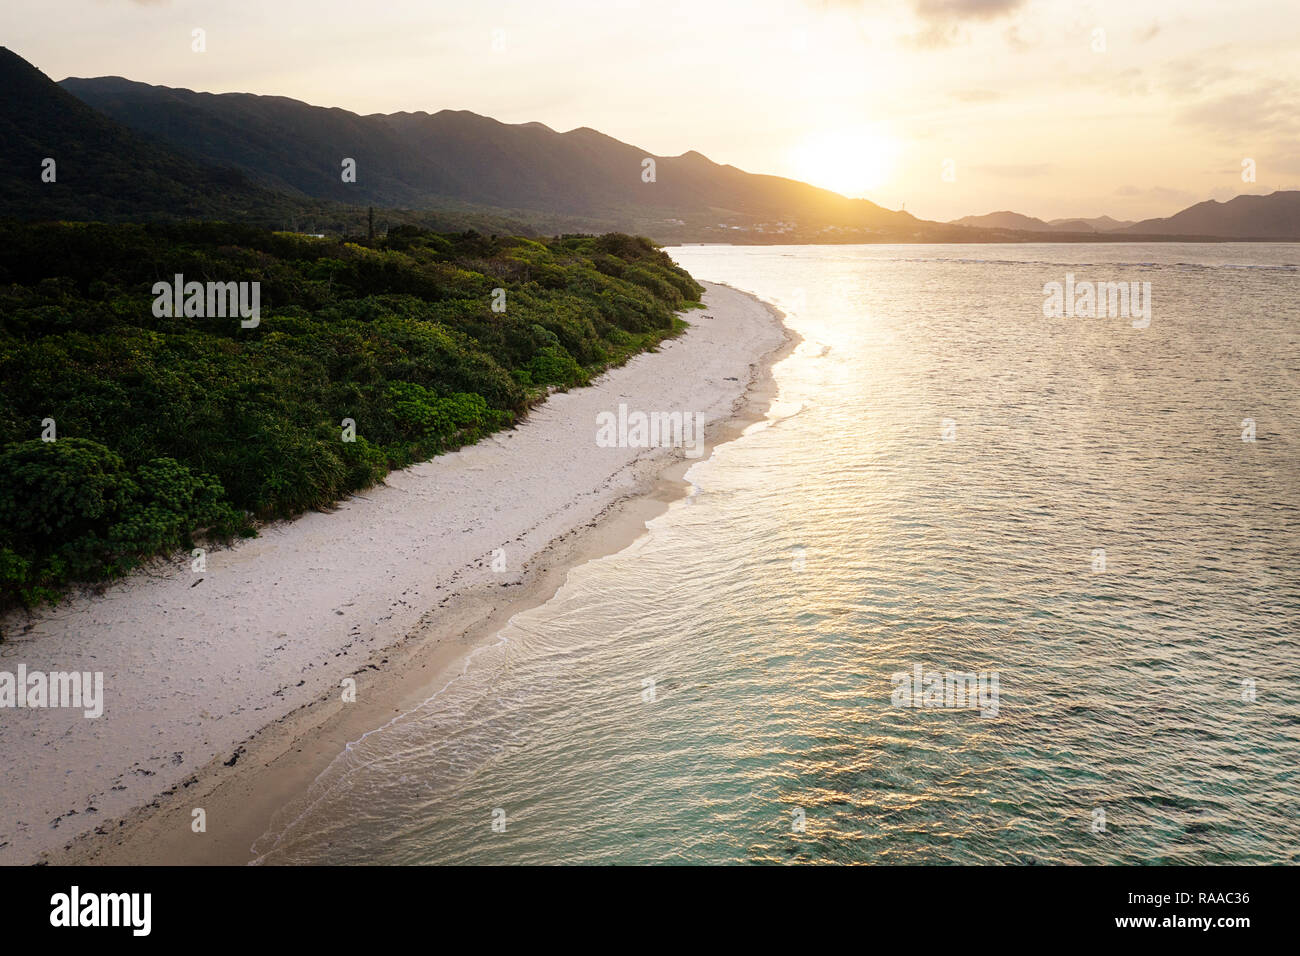 Vue aérienne sur l'île tropicale unique avec des montagnes, des plages de sable blanc et de récifs coralliens, au coucher du soleil, prise par drone, Ishigaki, Japon Banque D'Images